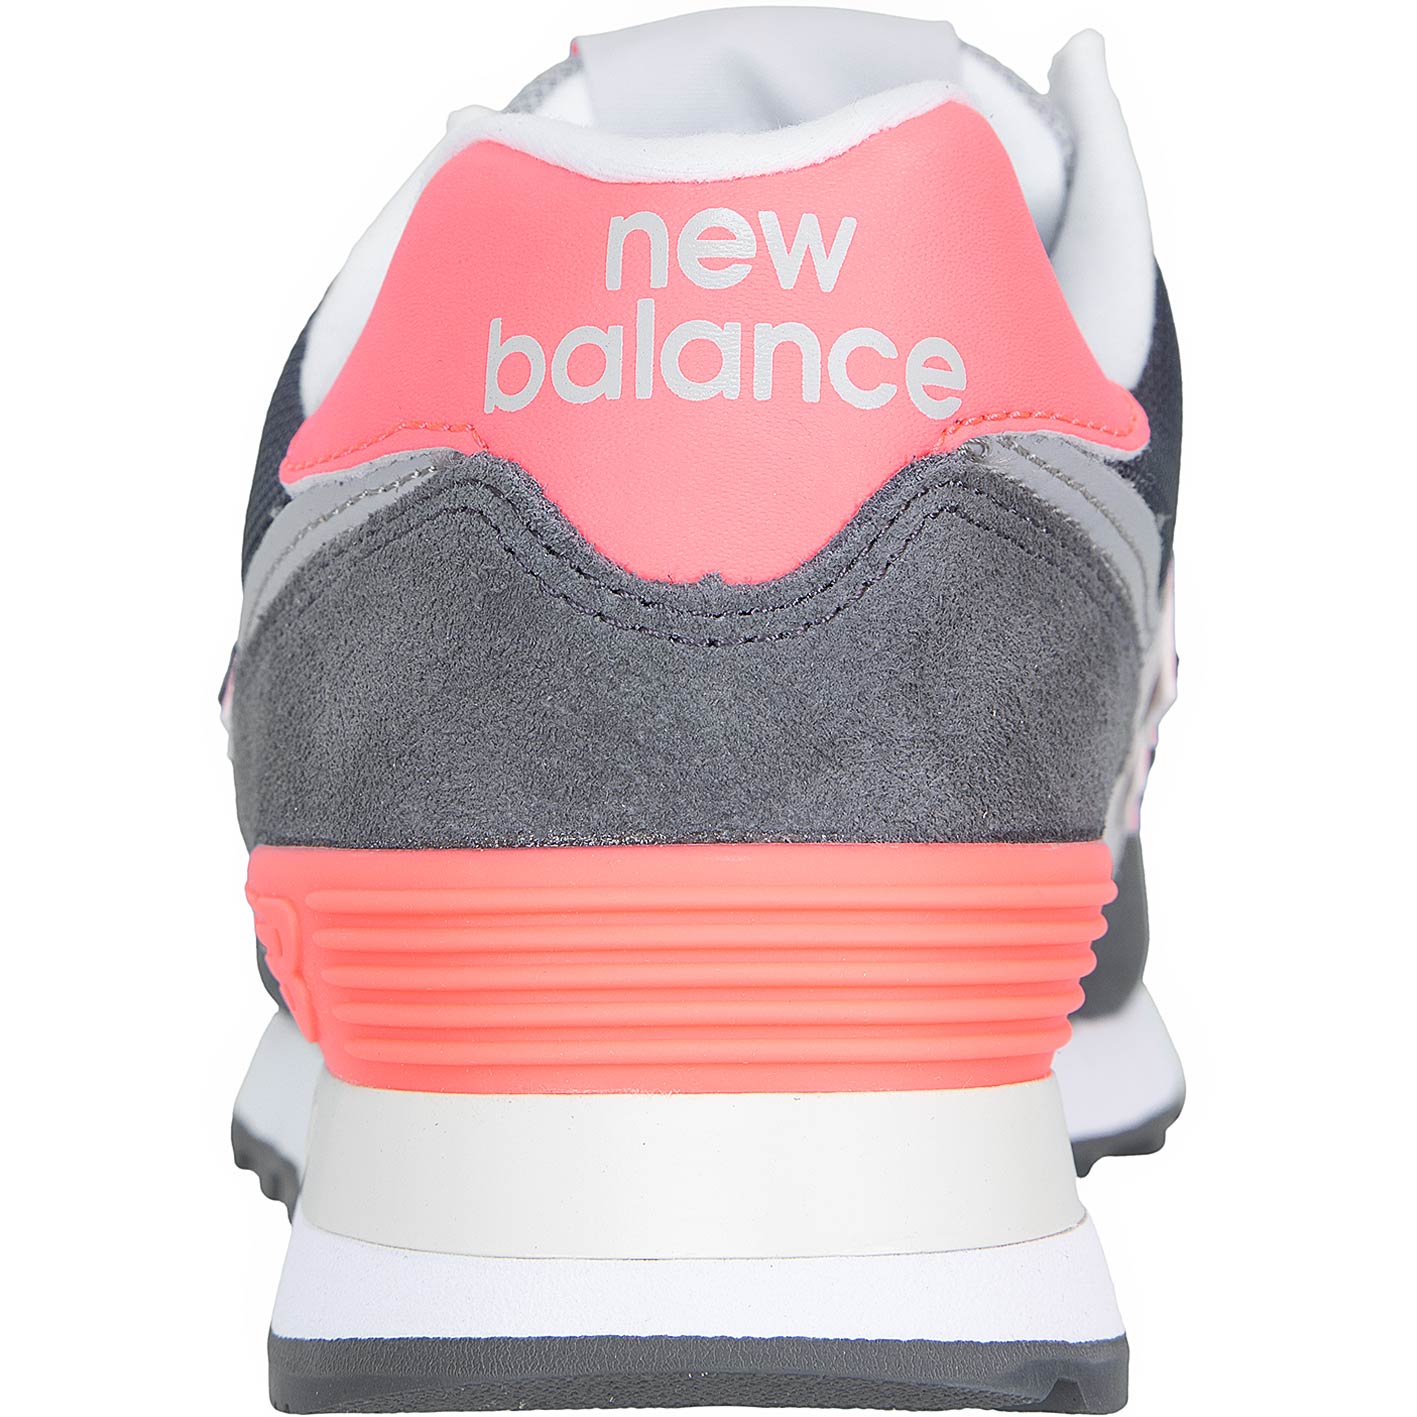 ☆ New Balance Damen Sneaker 574 grau - hier bestellen!